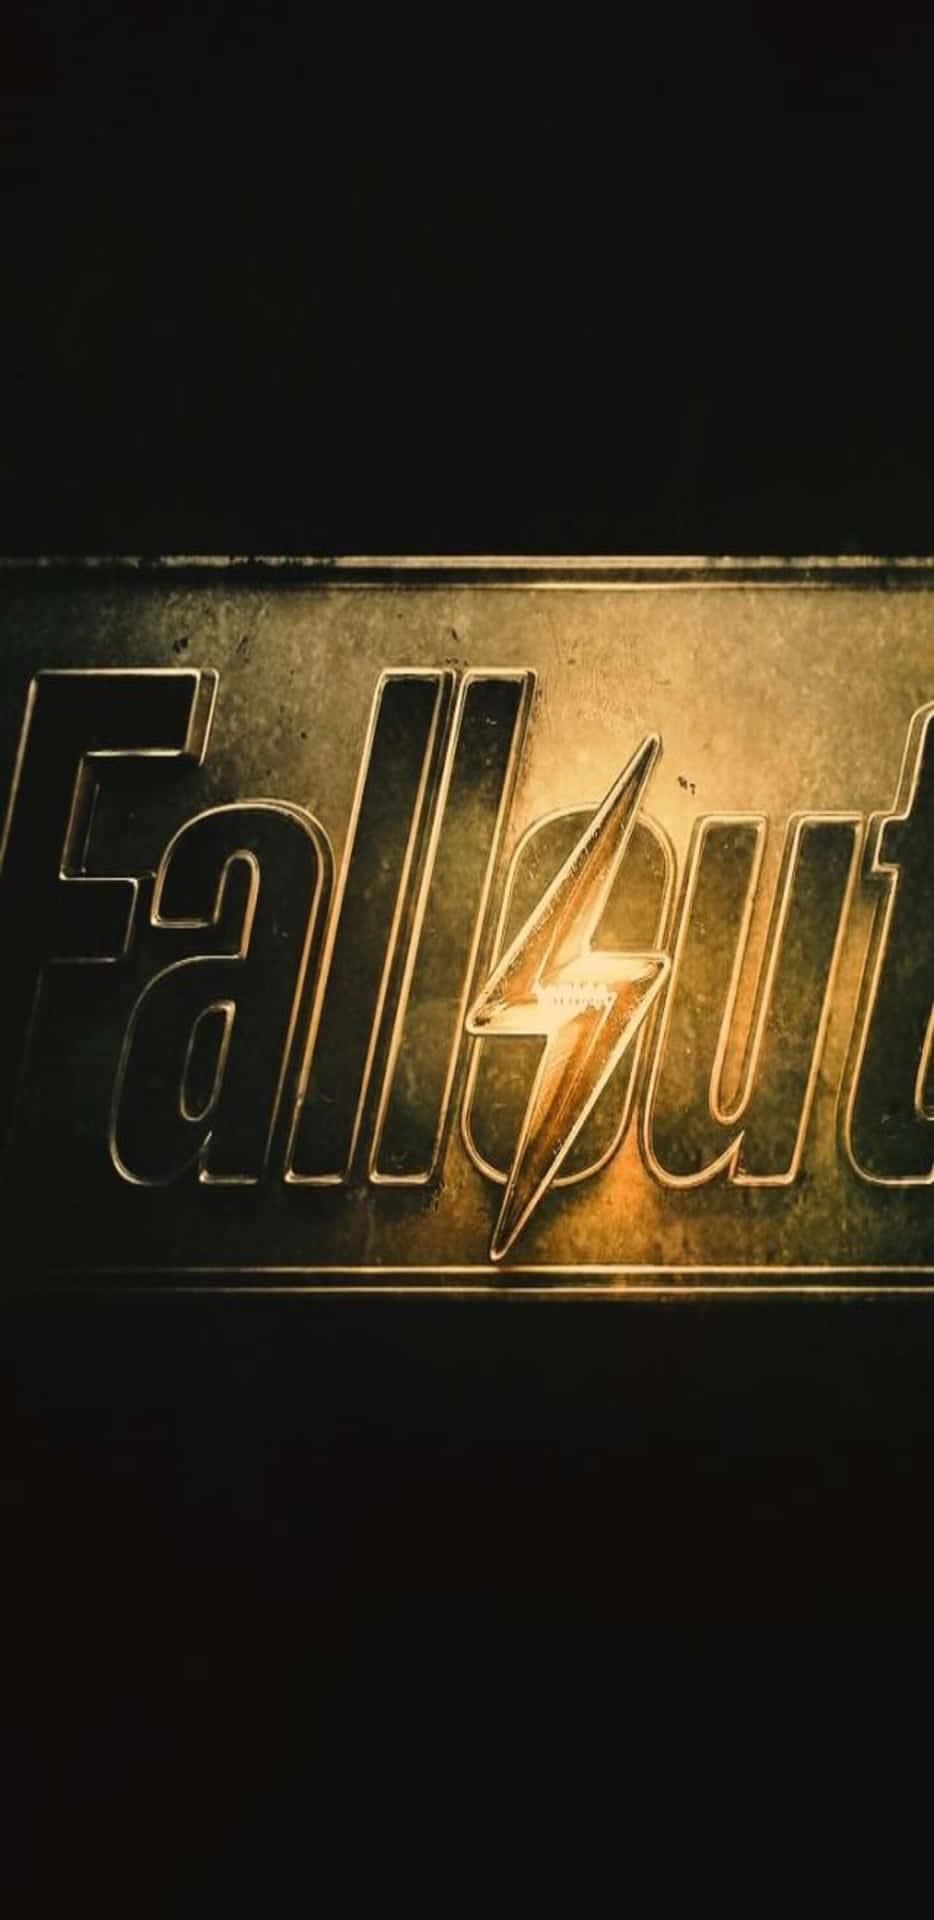 Fallout 76 on a Pixel 3XL